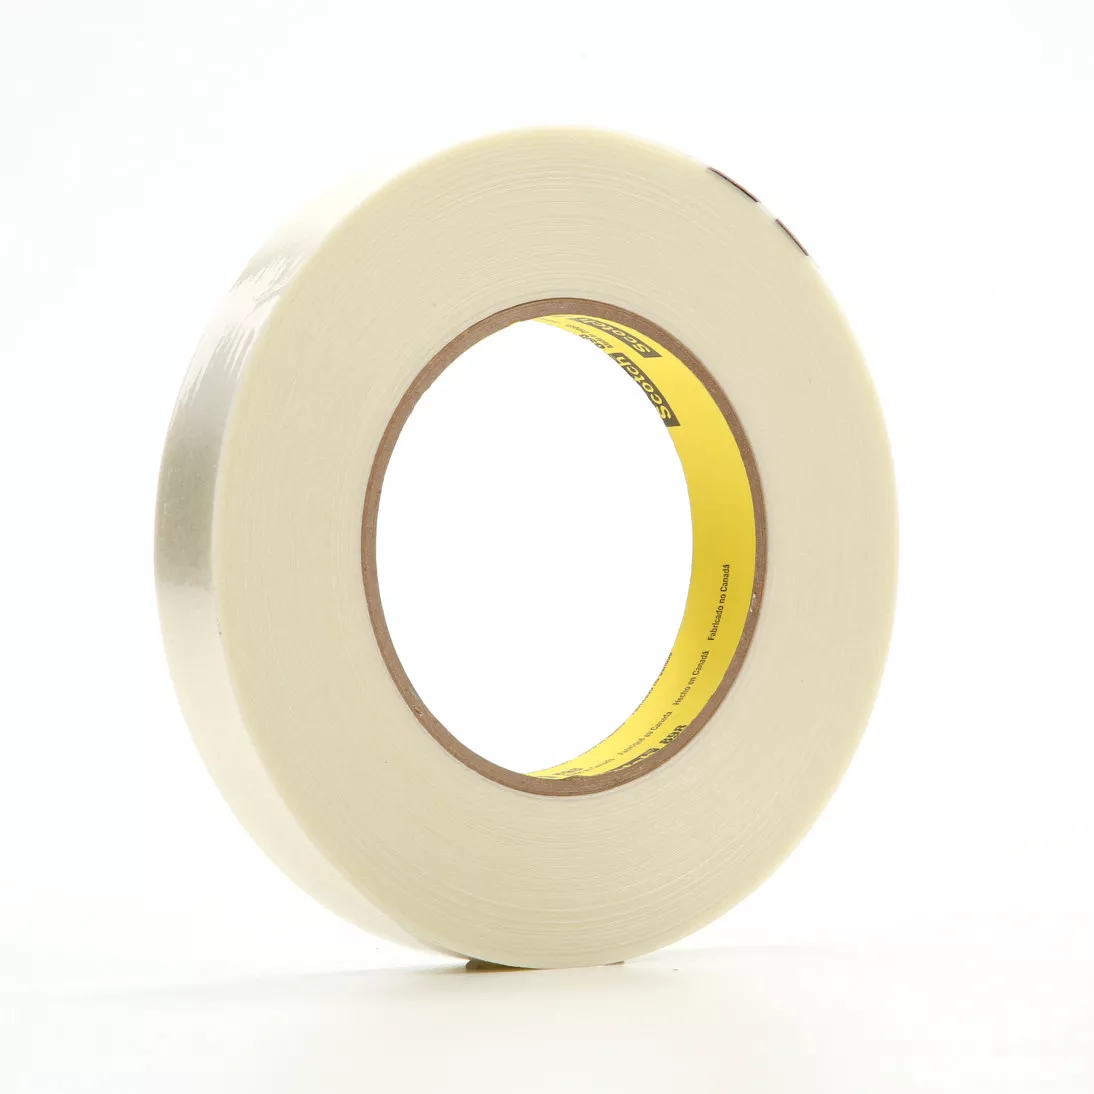 Scotch® Filament Tape 898, Clear, 18 mm x 660 m, 6.6 mil, 1 roll per
case